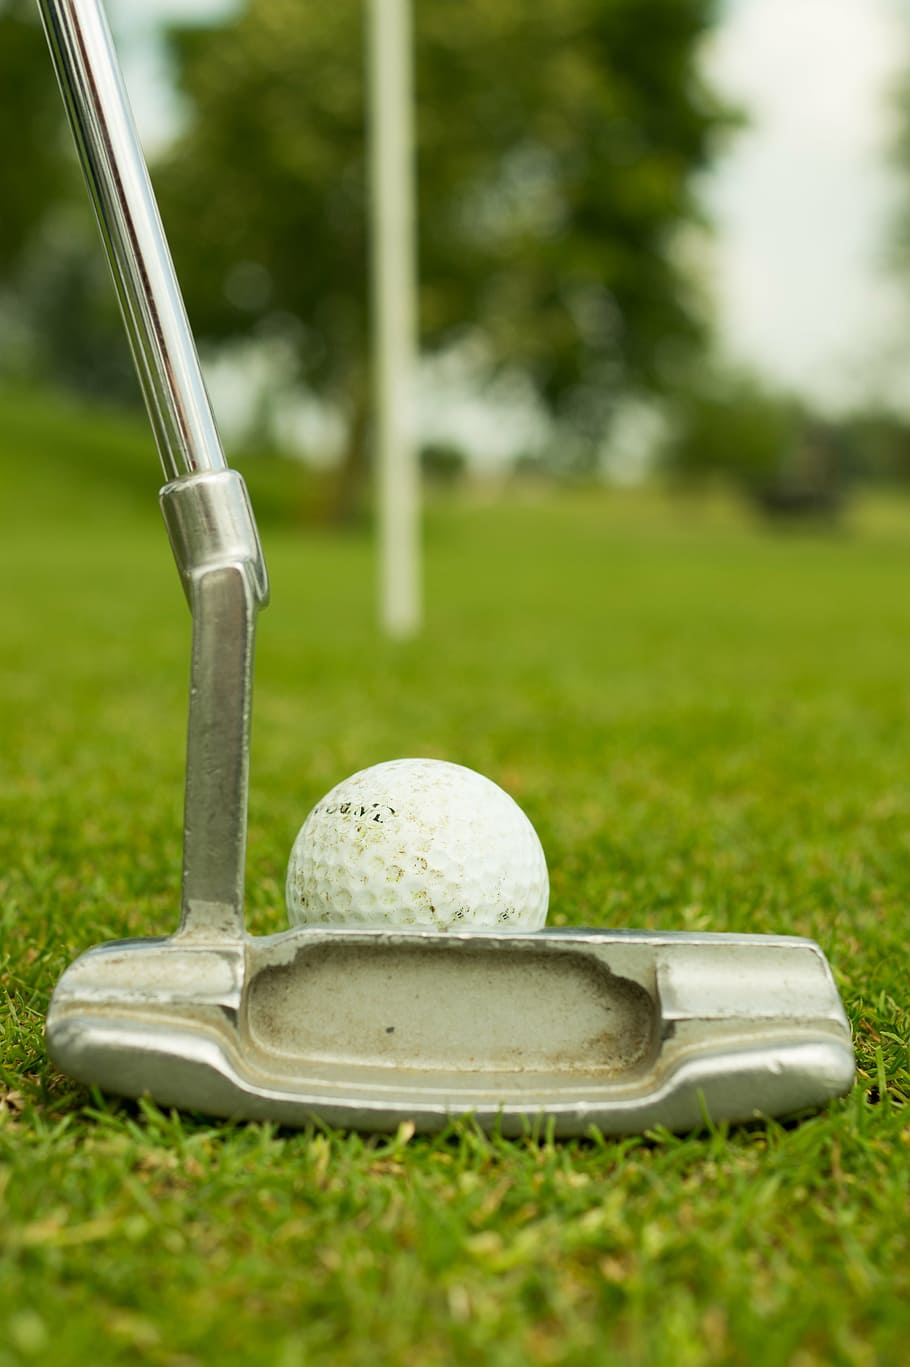 gris, putter de golf, blanco, bola de oro, verde, fotografía de enfoque selectivo de hierba, diurno, acero inoxidable, golf, club